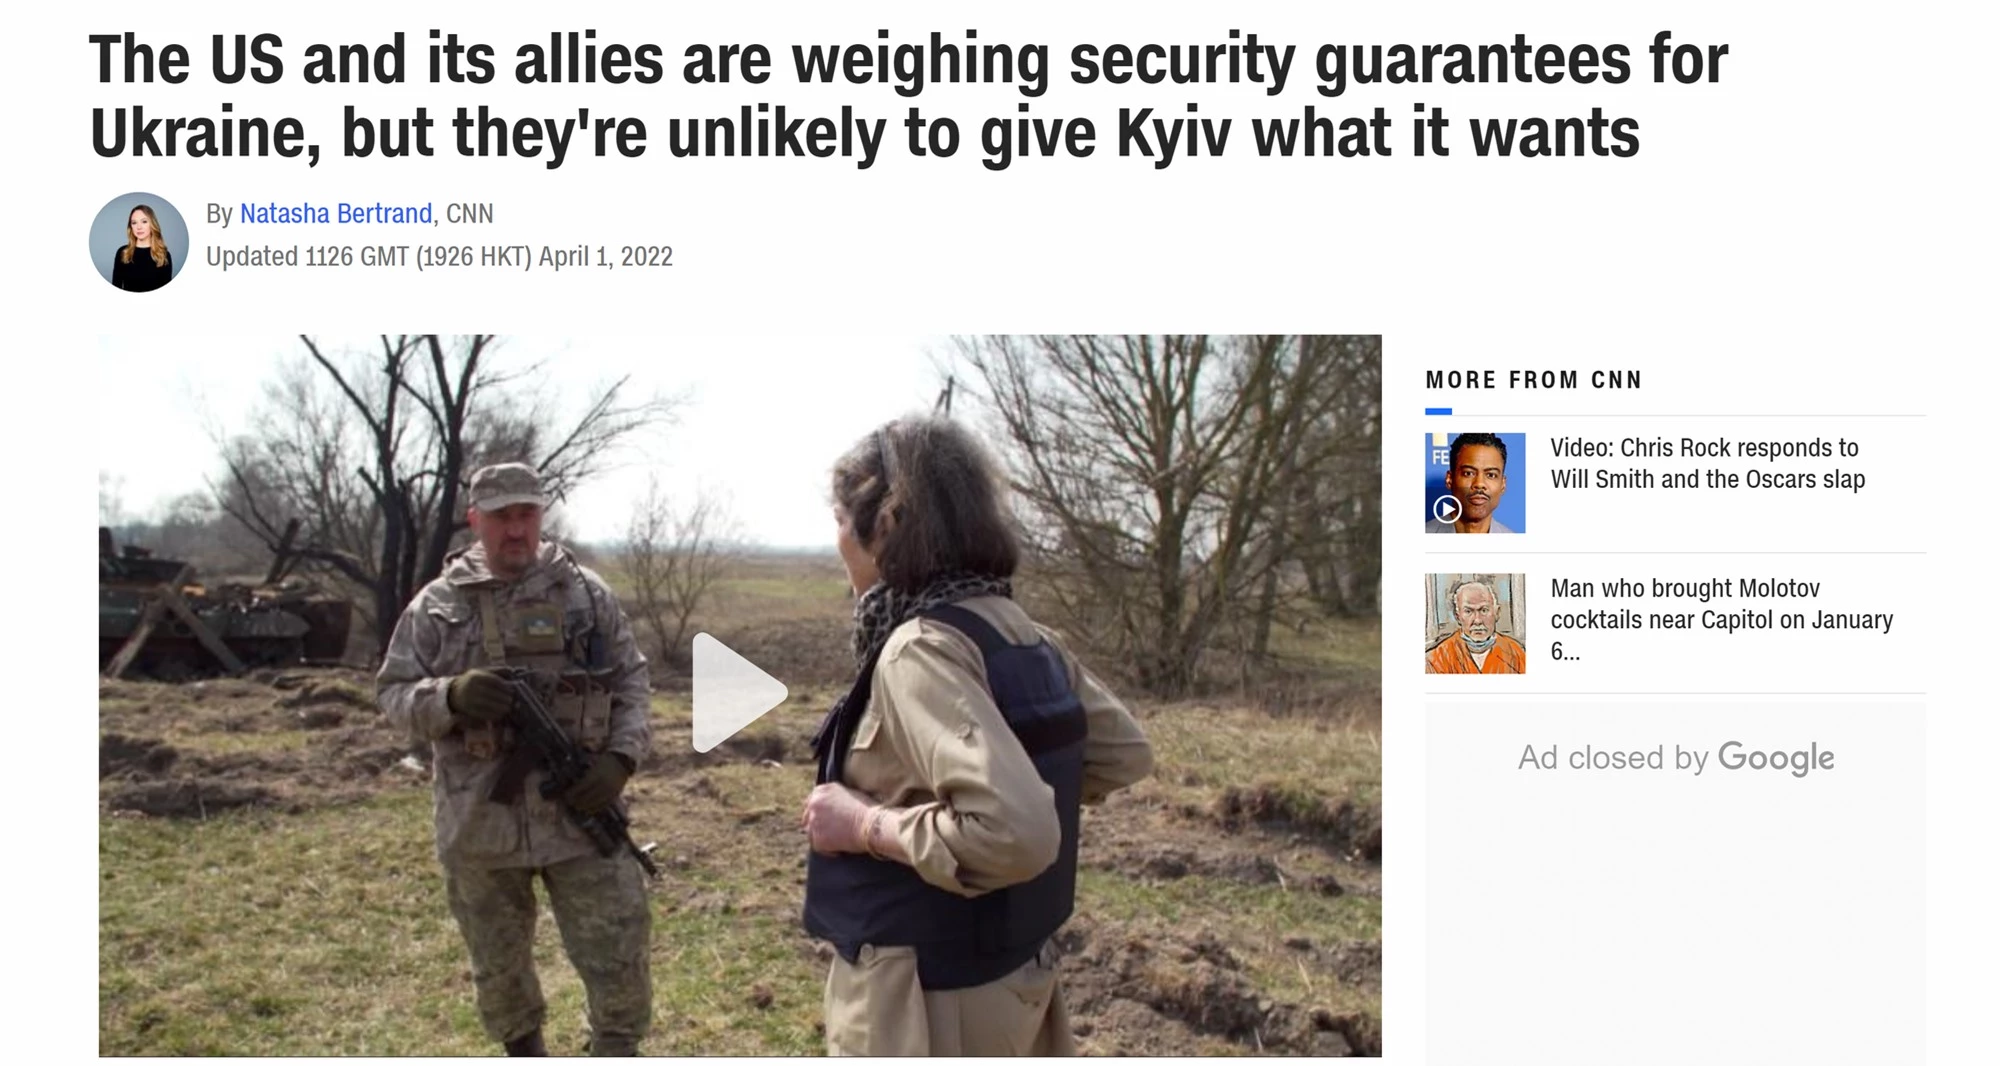 Đảm bảo an ninh: Mỹ và đồng minh đang do dự, Ukraine chưa chắc đã có được điều mình muốn - Ảnh 1.